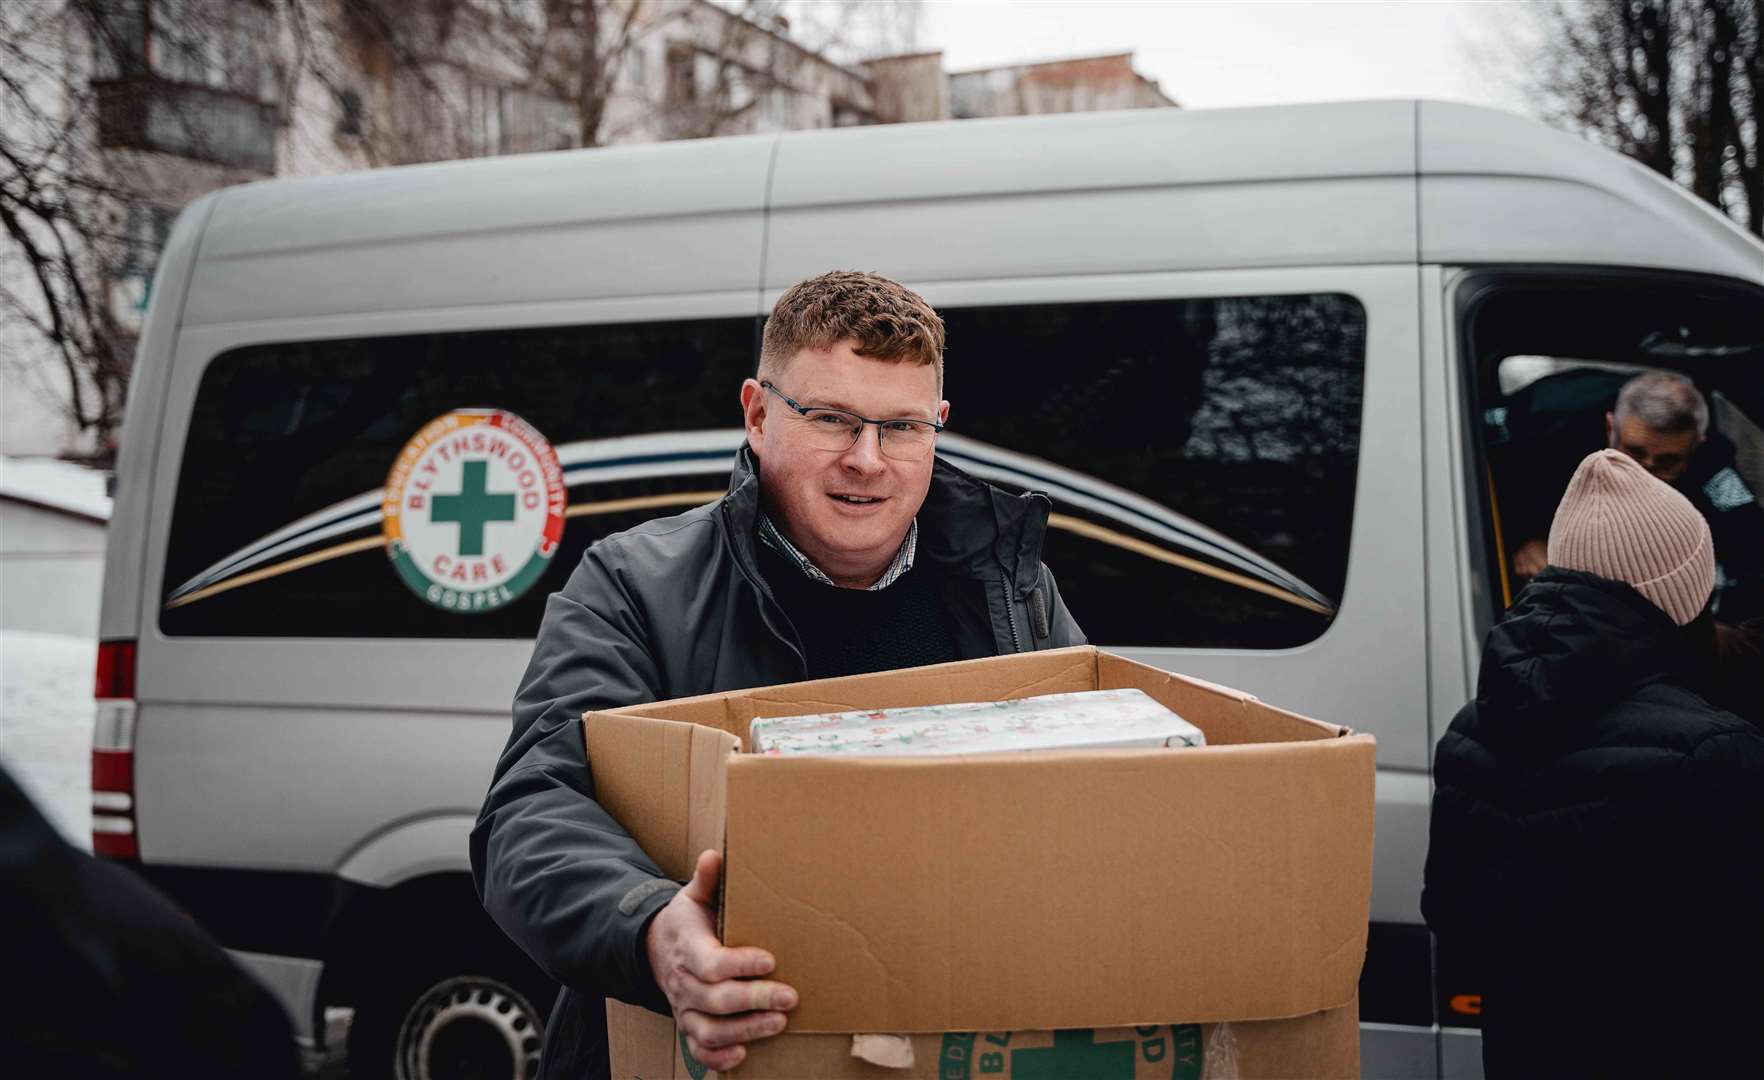 Rev Jeremy Ross delivering shoeboxes in Ukraine in December.